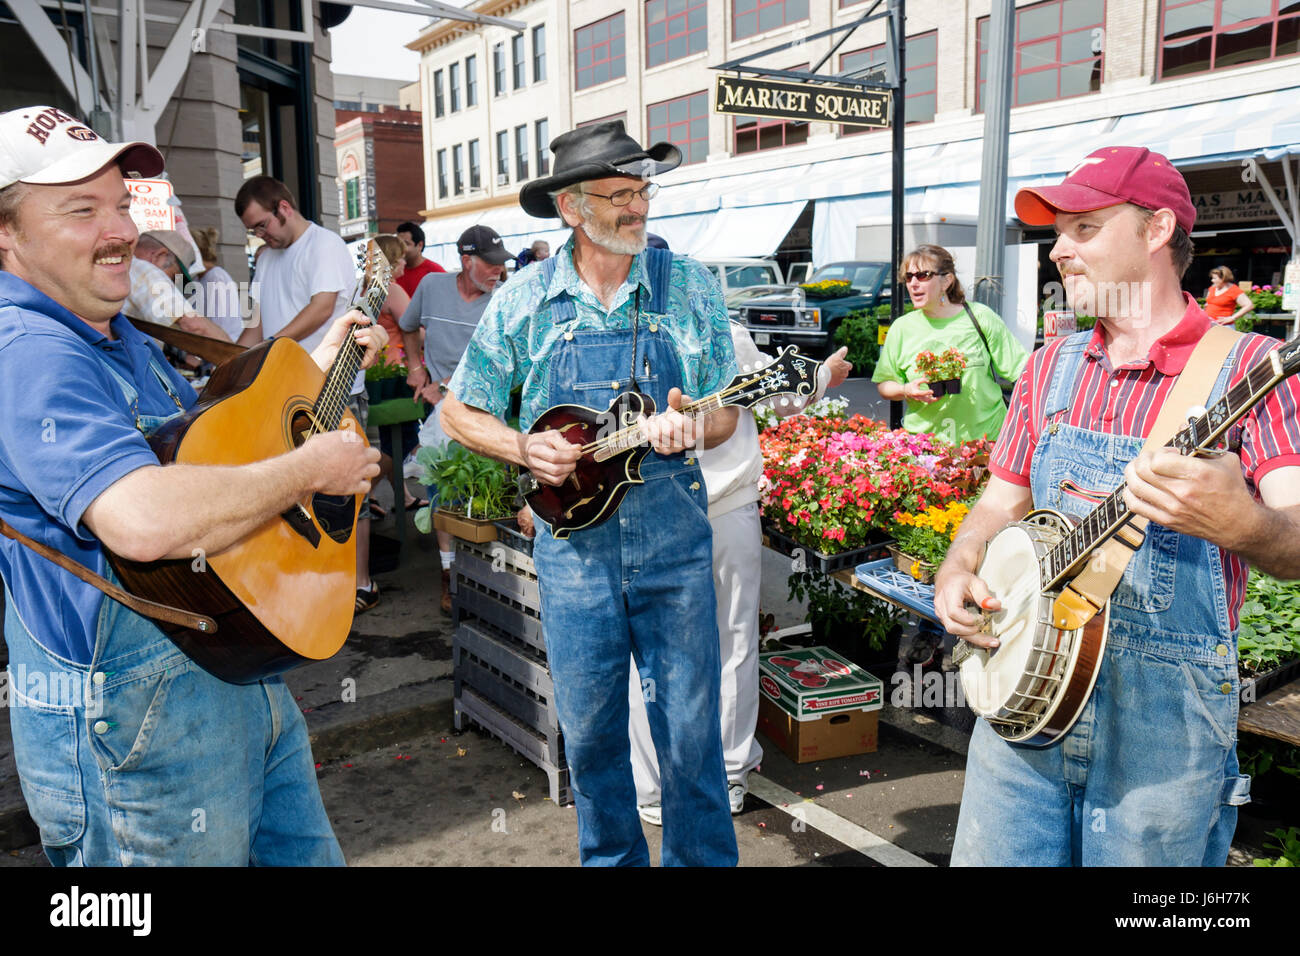 Roanoke Virginia,Market Square,Farmers' Market,bluegrass,musiciens,homme hommes hommes adultes,hommes,guitare,banjo,mandoline,divertir,VA080503011 Banque D'Images